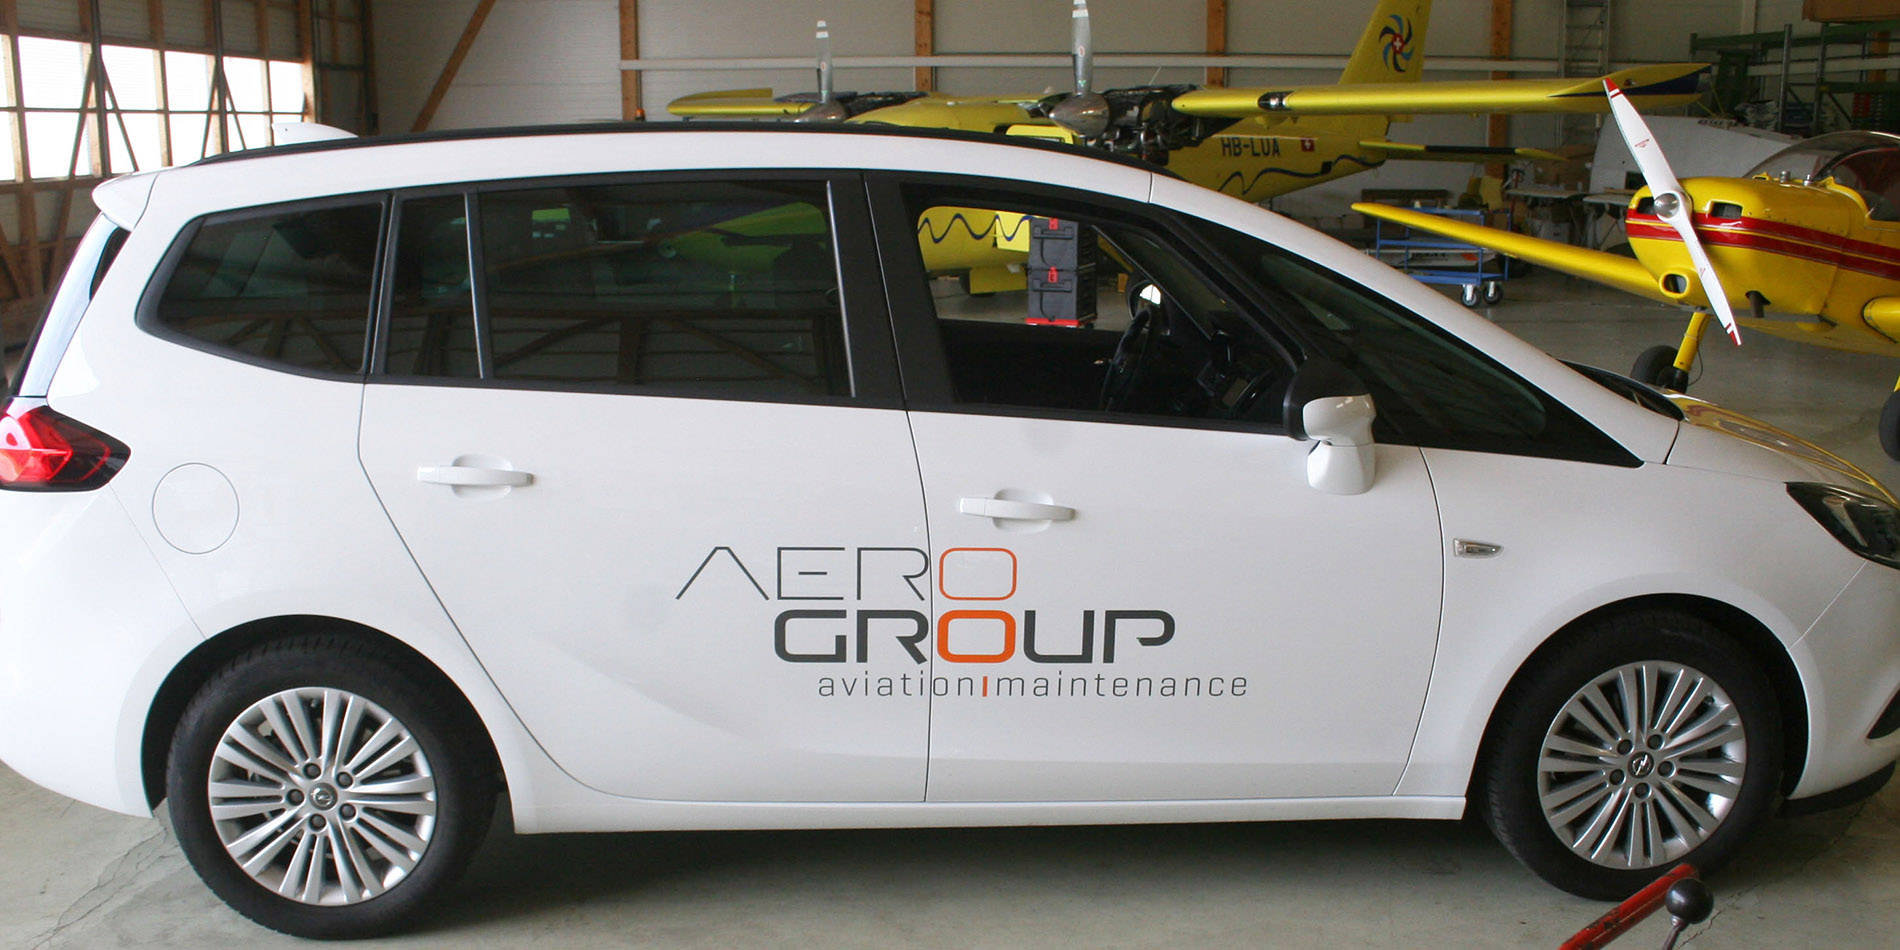 Aerogroup - Habillage sur voiture - B12communication, communication et graphisme